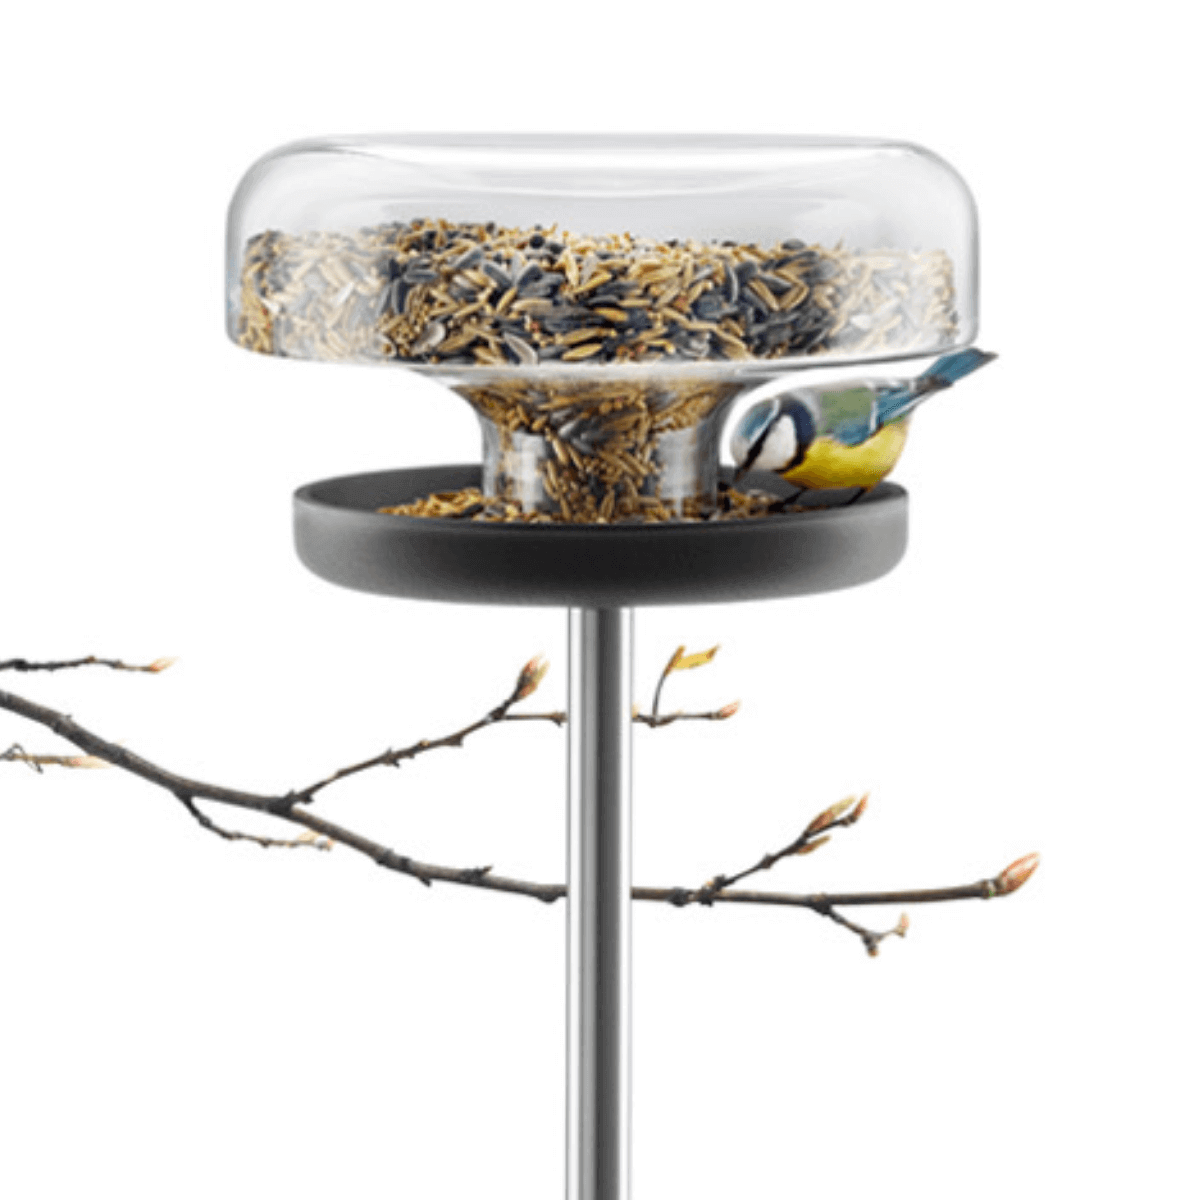 fém rúdon álló földbe szúrható üveg adagolóval ellátott madáretető asztal